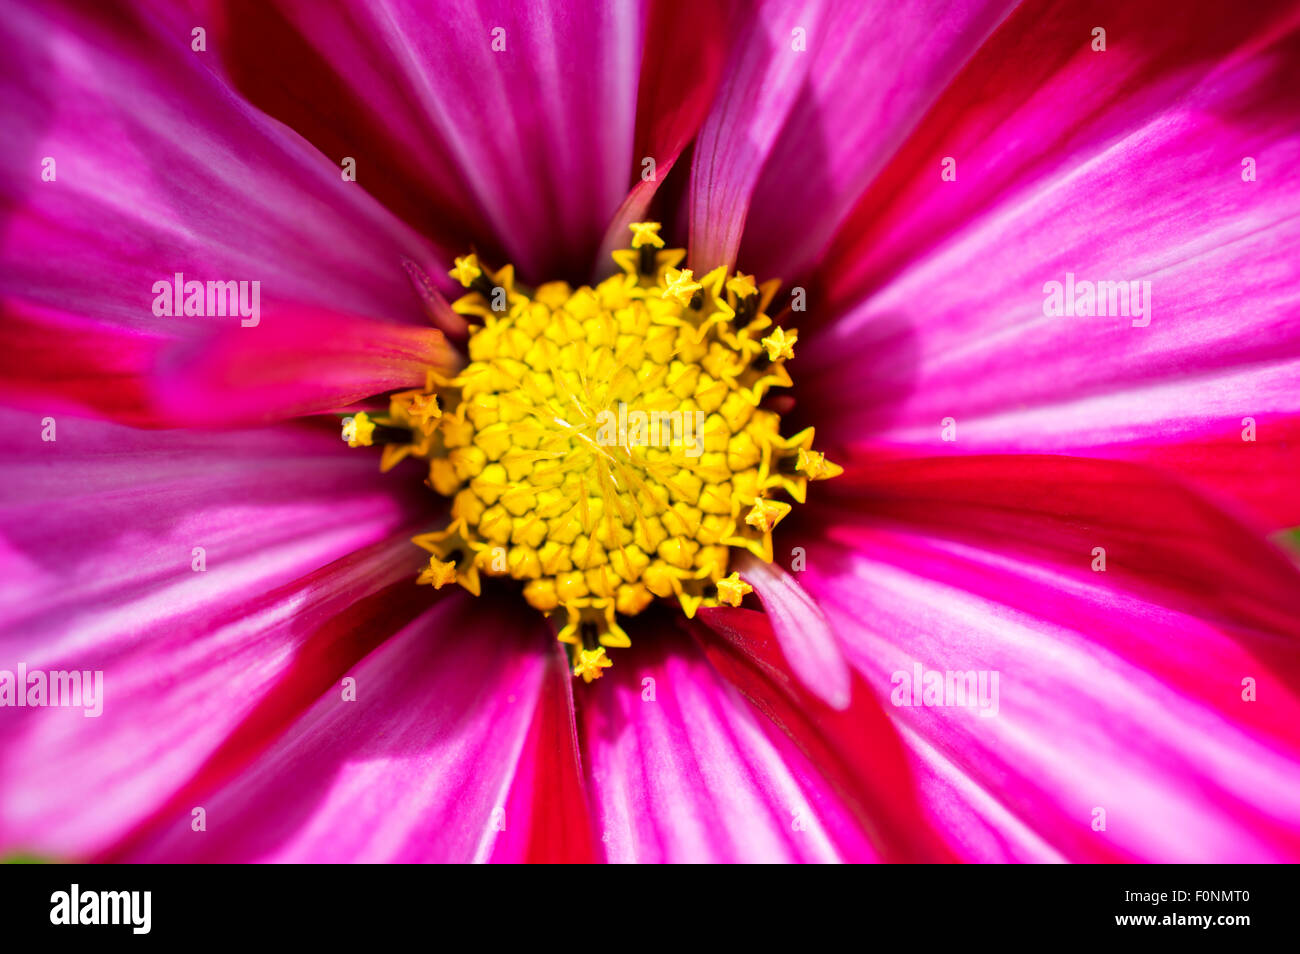 Lebendigen Kosmos rosa Blume - Makro Nahaufnahme der Staubblätter, Antheren und Blütenblätter Stockfoto